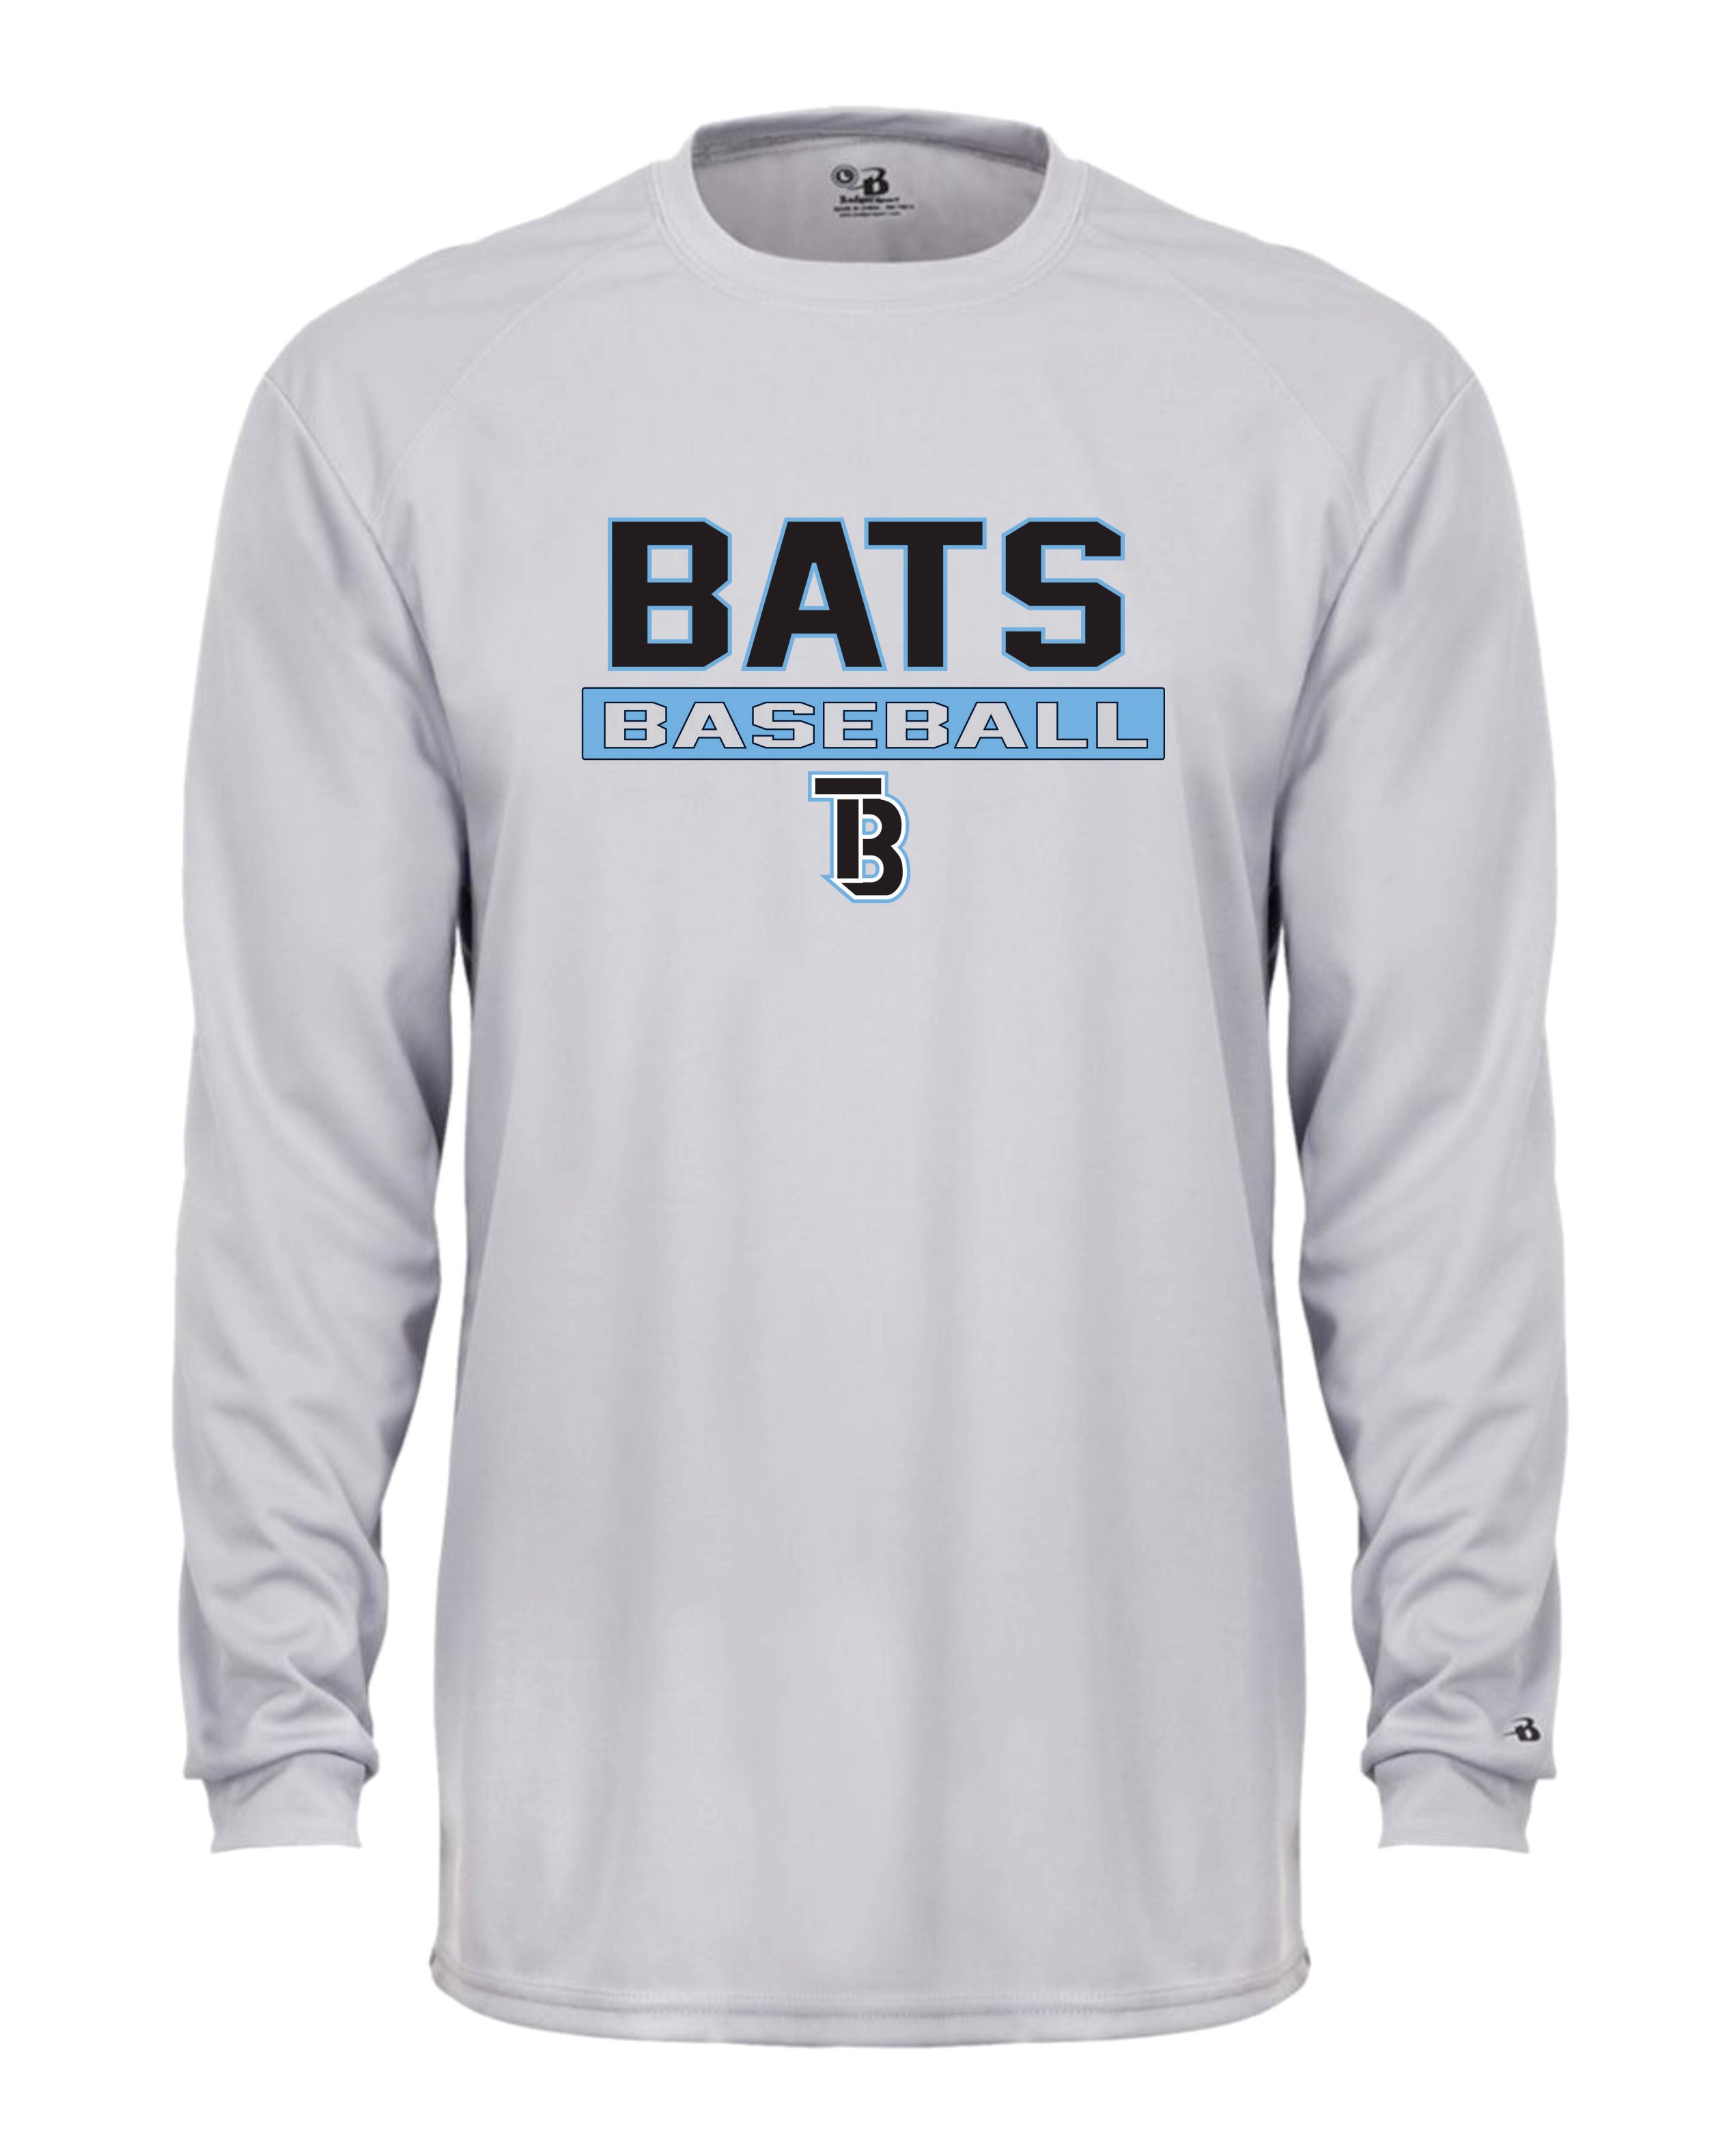 Tampa Bay Bats Long Sleeve Badger Dri Fit Shirt